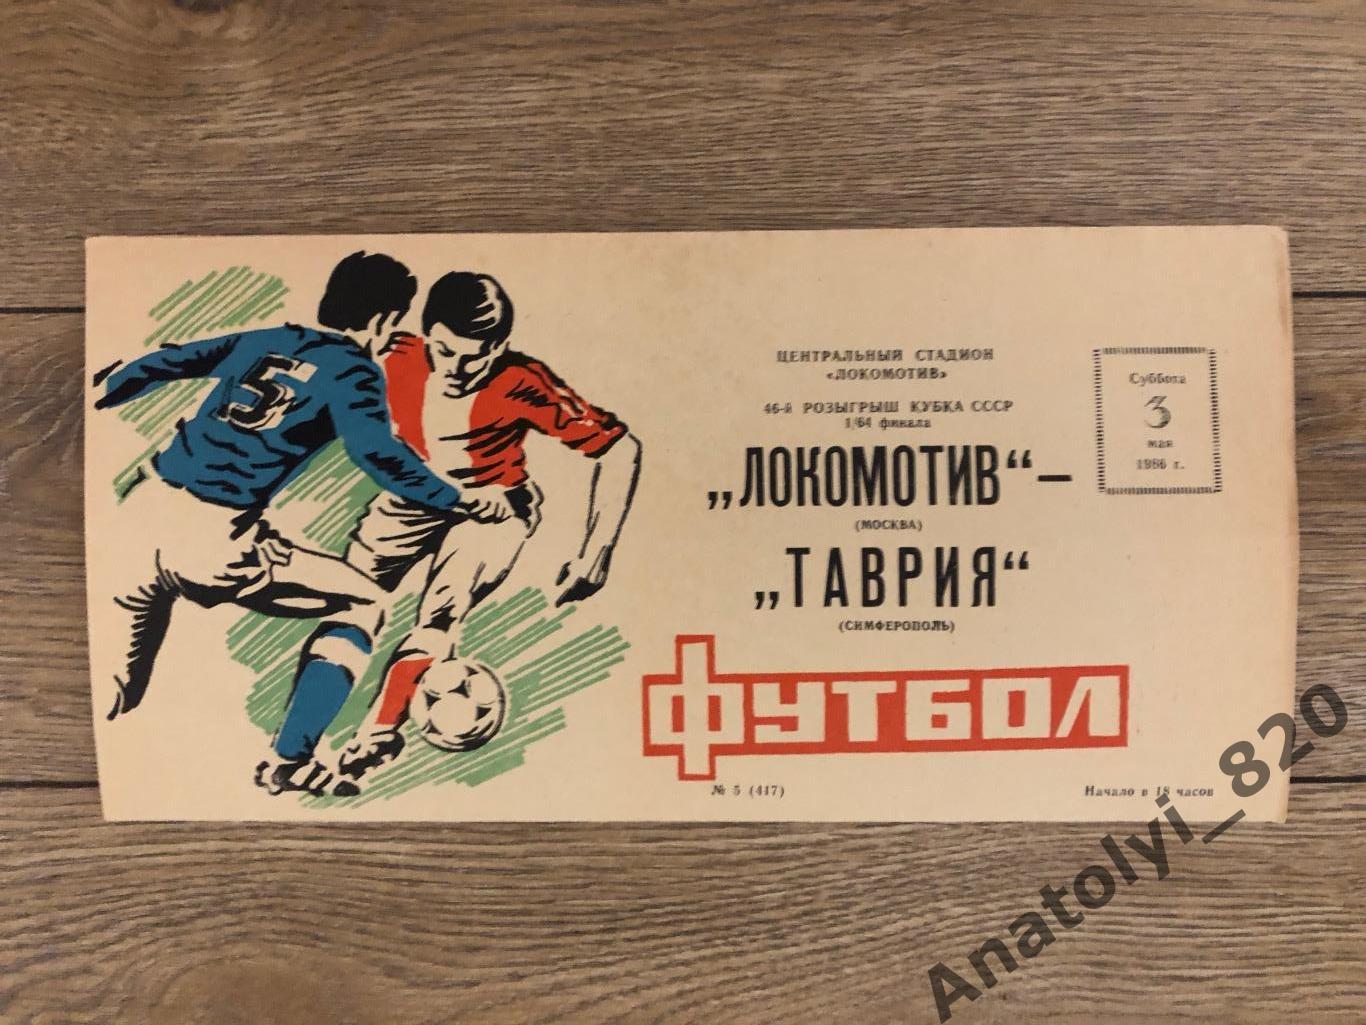 Локомотив Москва - Таврия Симферополь, кубок 1986 год